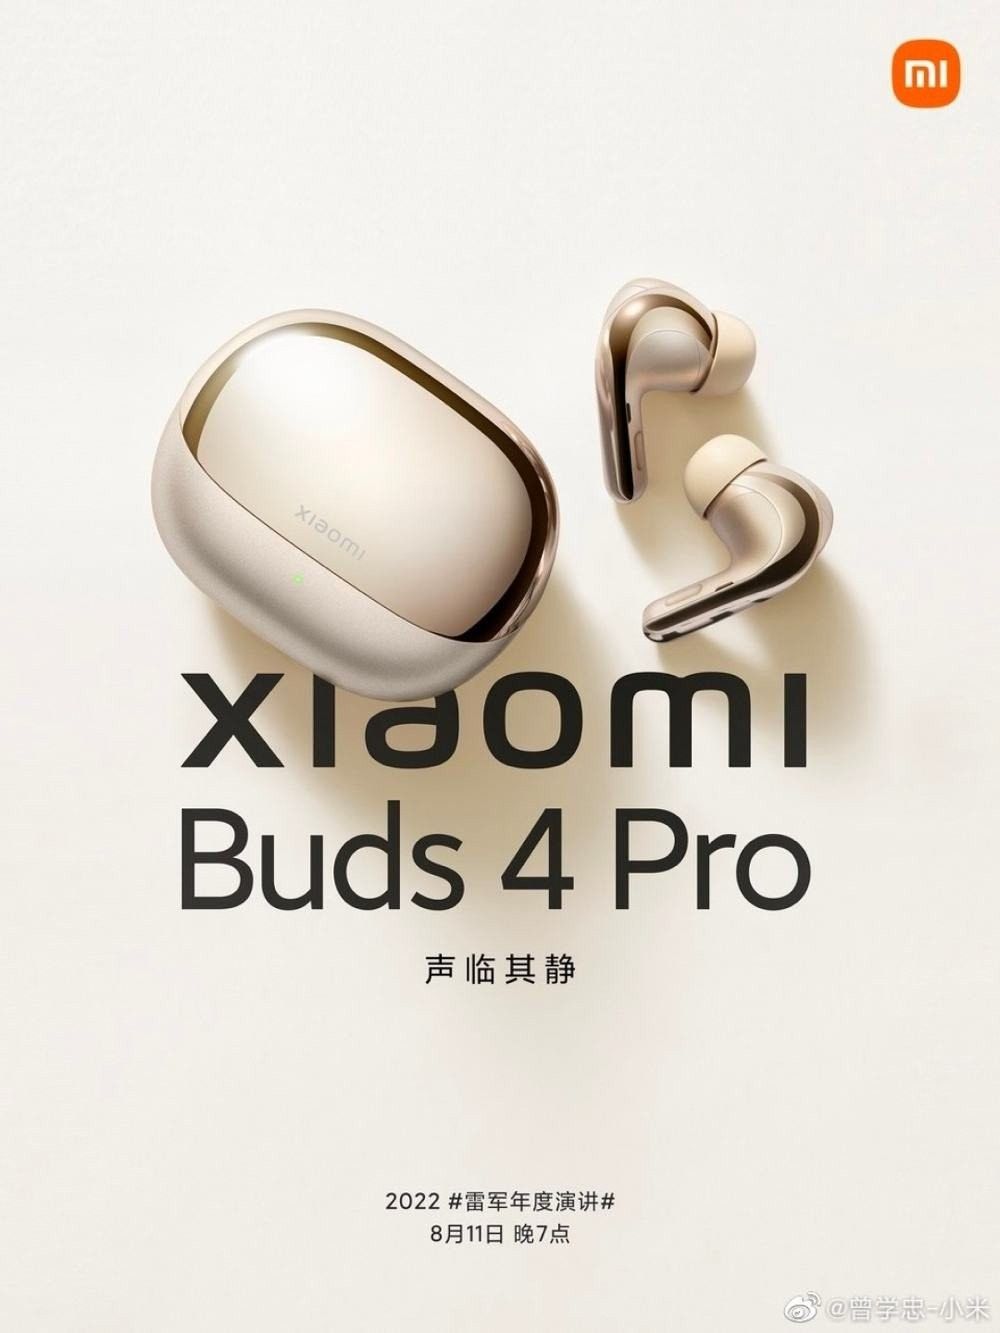 Xiaomi MIX Fold 2: Τα πρώτα στοιχεία για το νέο foldable που παρουσιάζεται αύριο